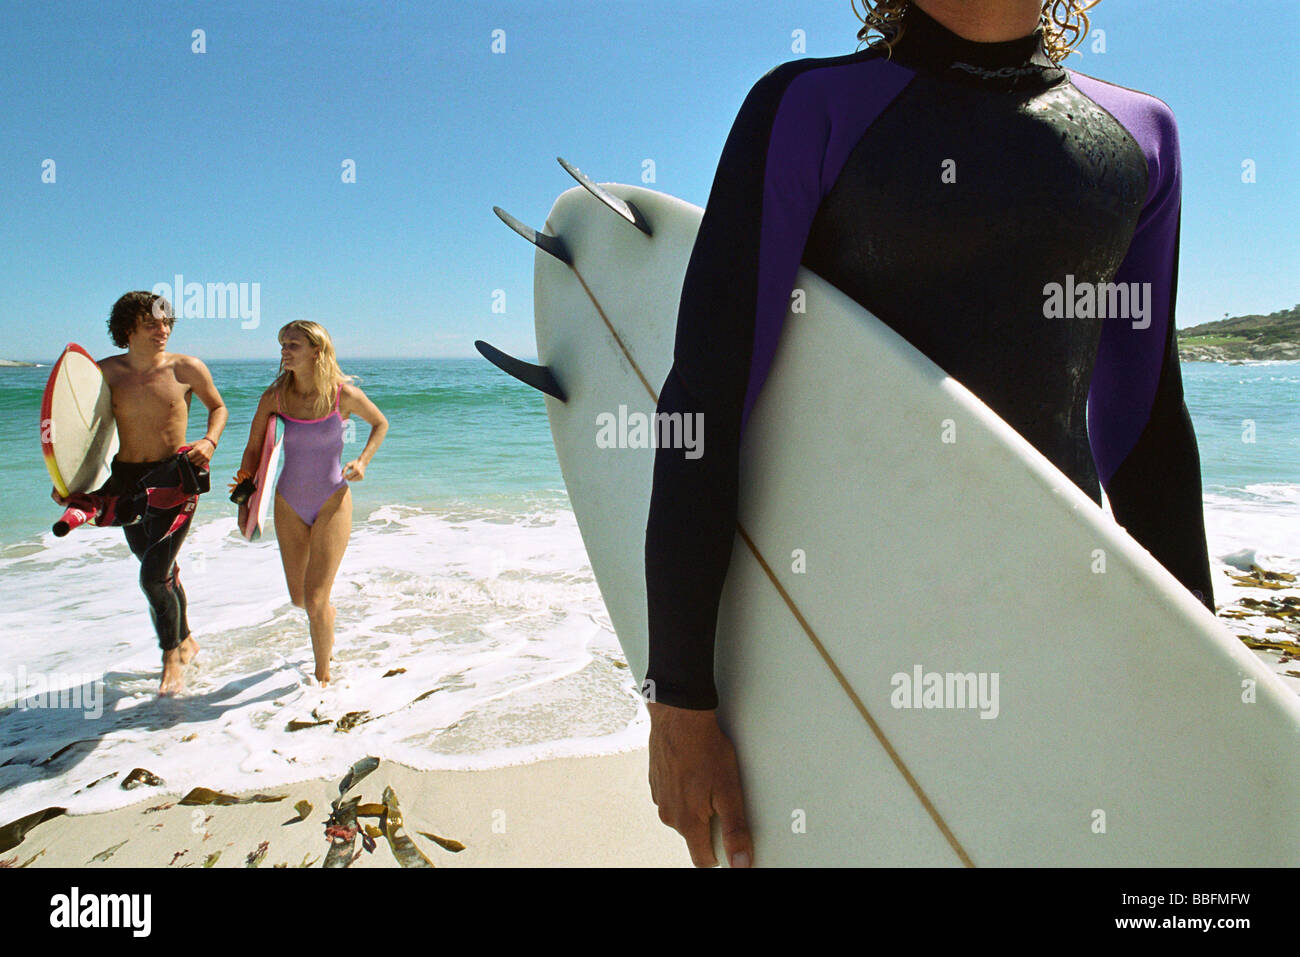 Surfer carrying board sous le bras, un couple sortant d'eau ensemble Banque D'Images